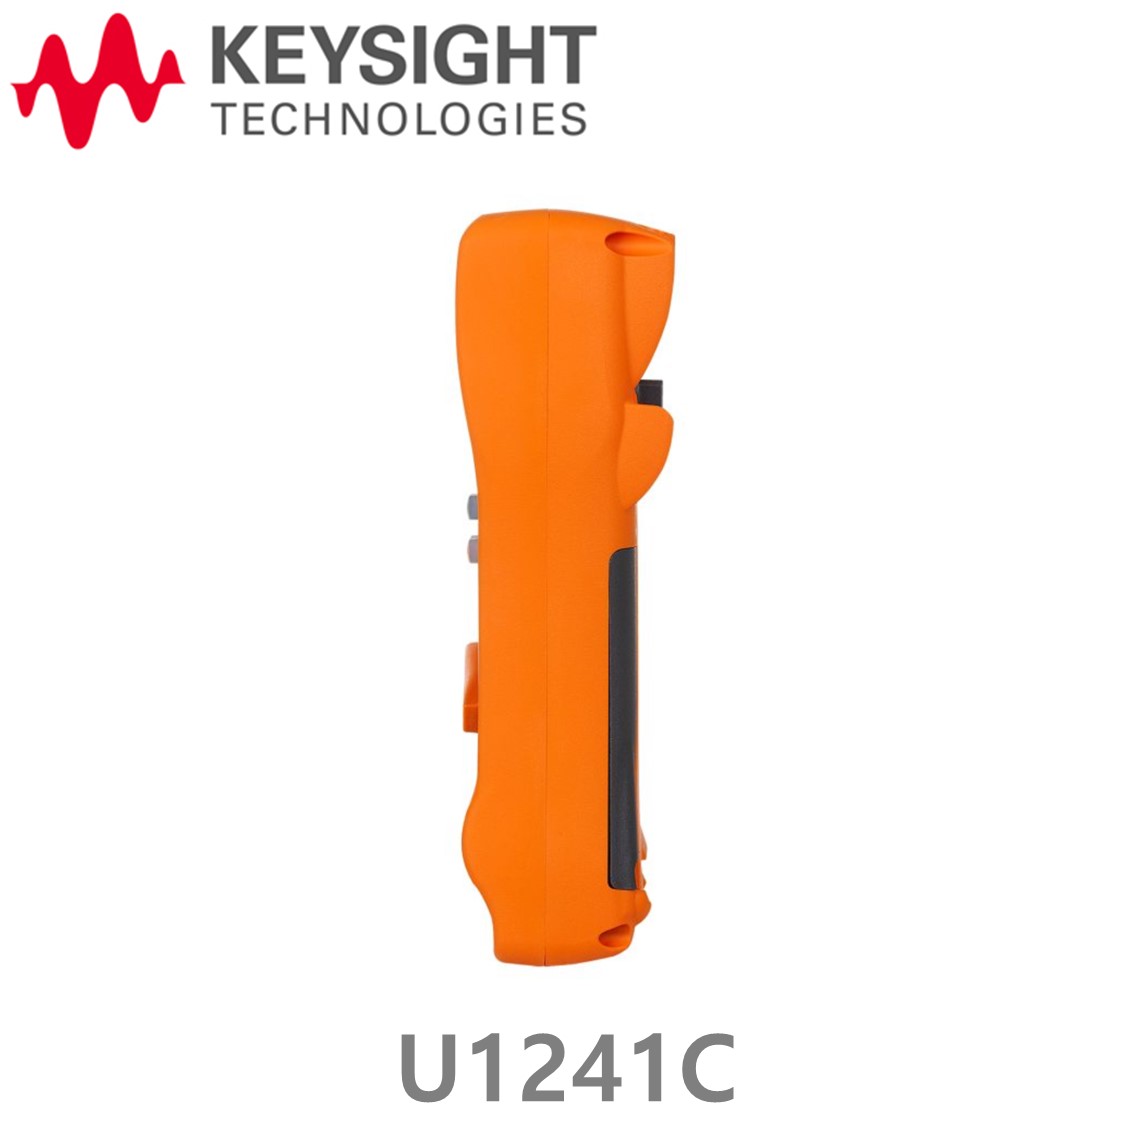 [ KEYSIGHT U1241C ] 키사이트 4디지트 핸드형 디지털 멀티미터, 방수방진 IP67 U1241C